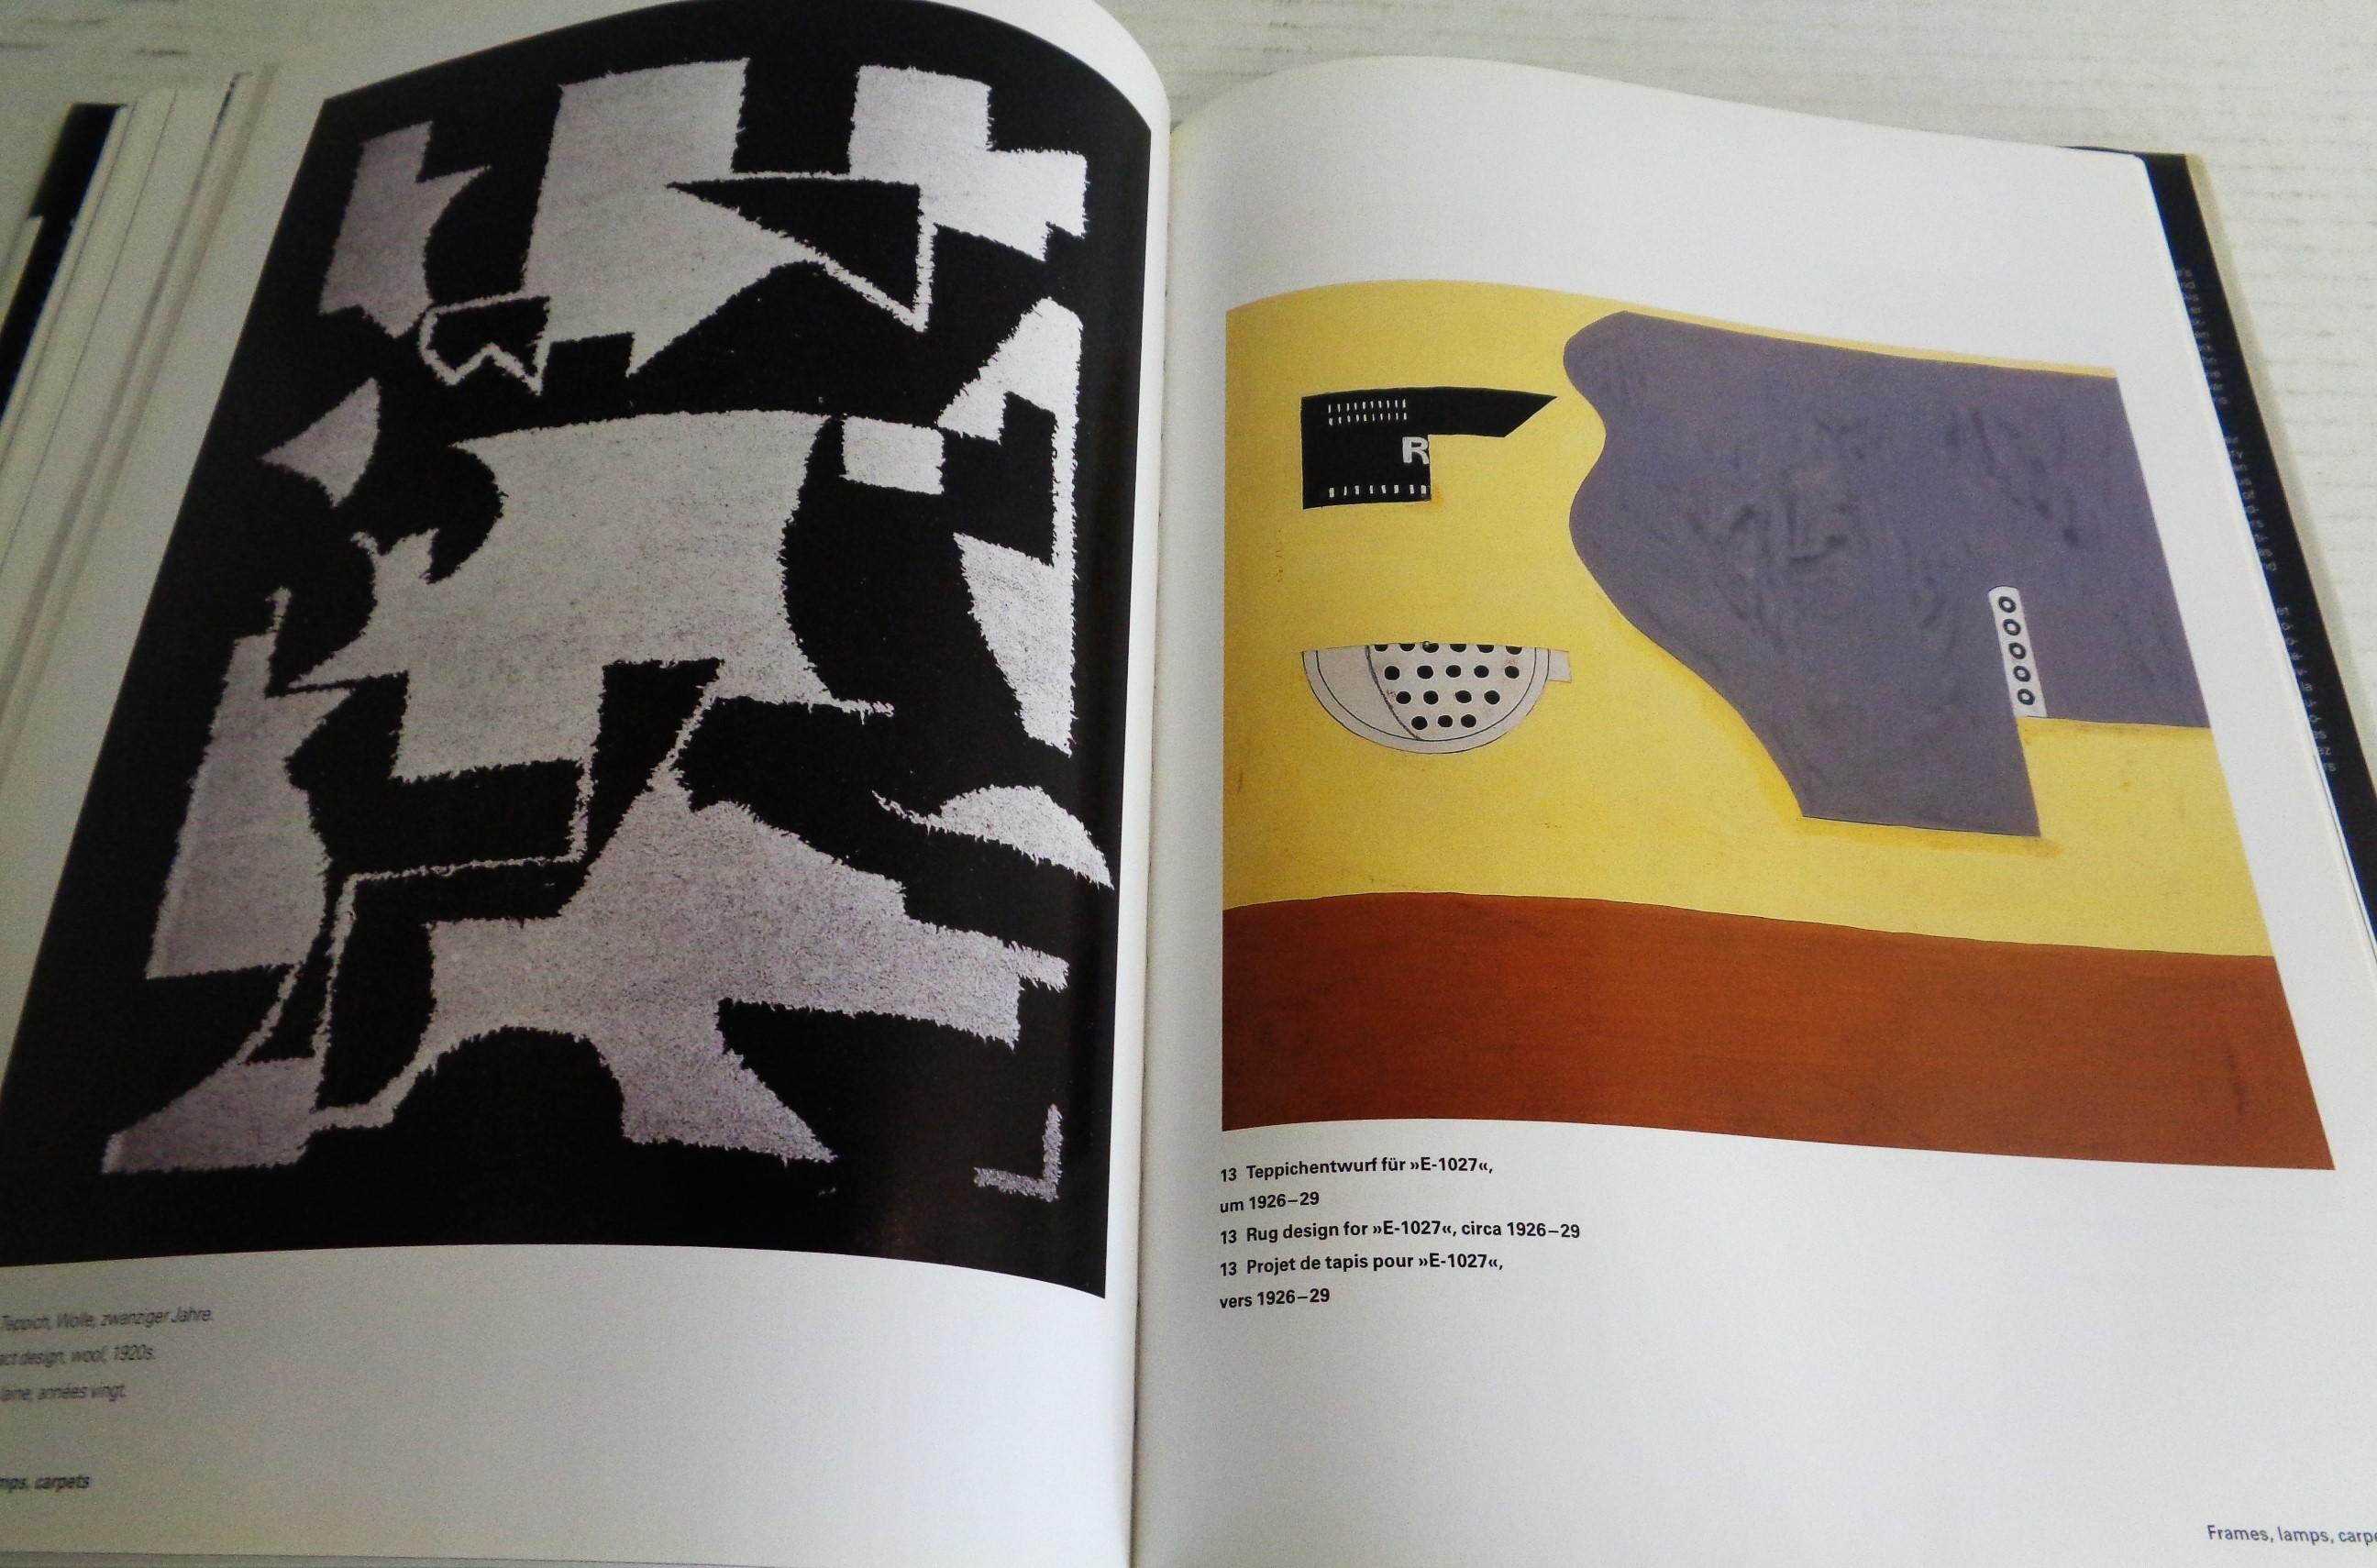 Eileen Gray - Design and Architecture - Garner, Philippe - 2006 Taschen 10